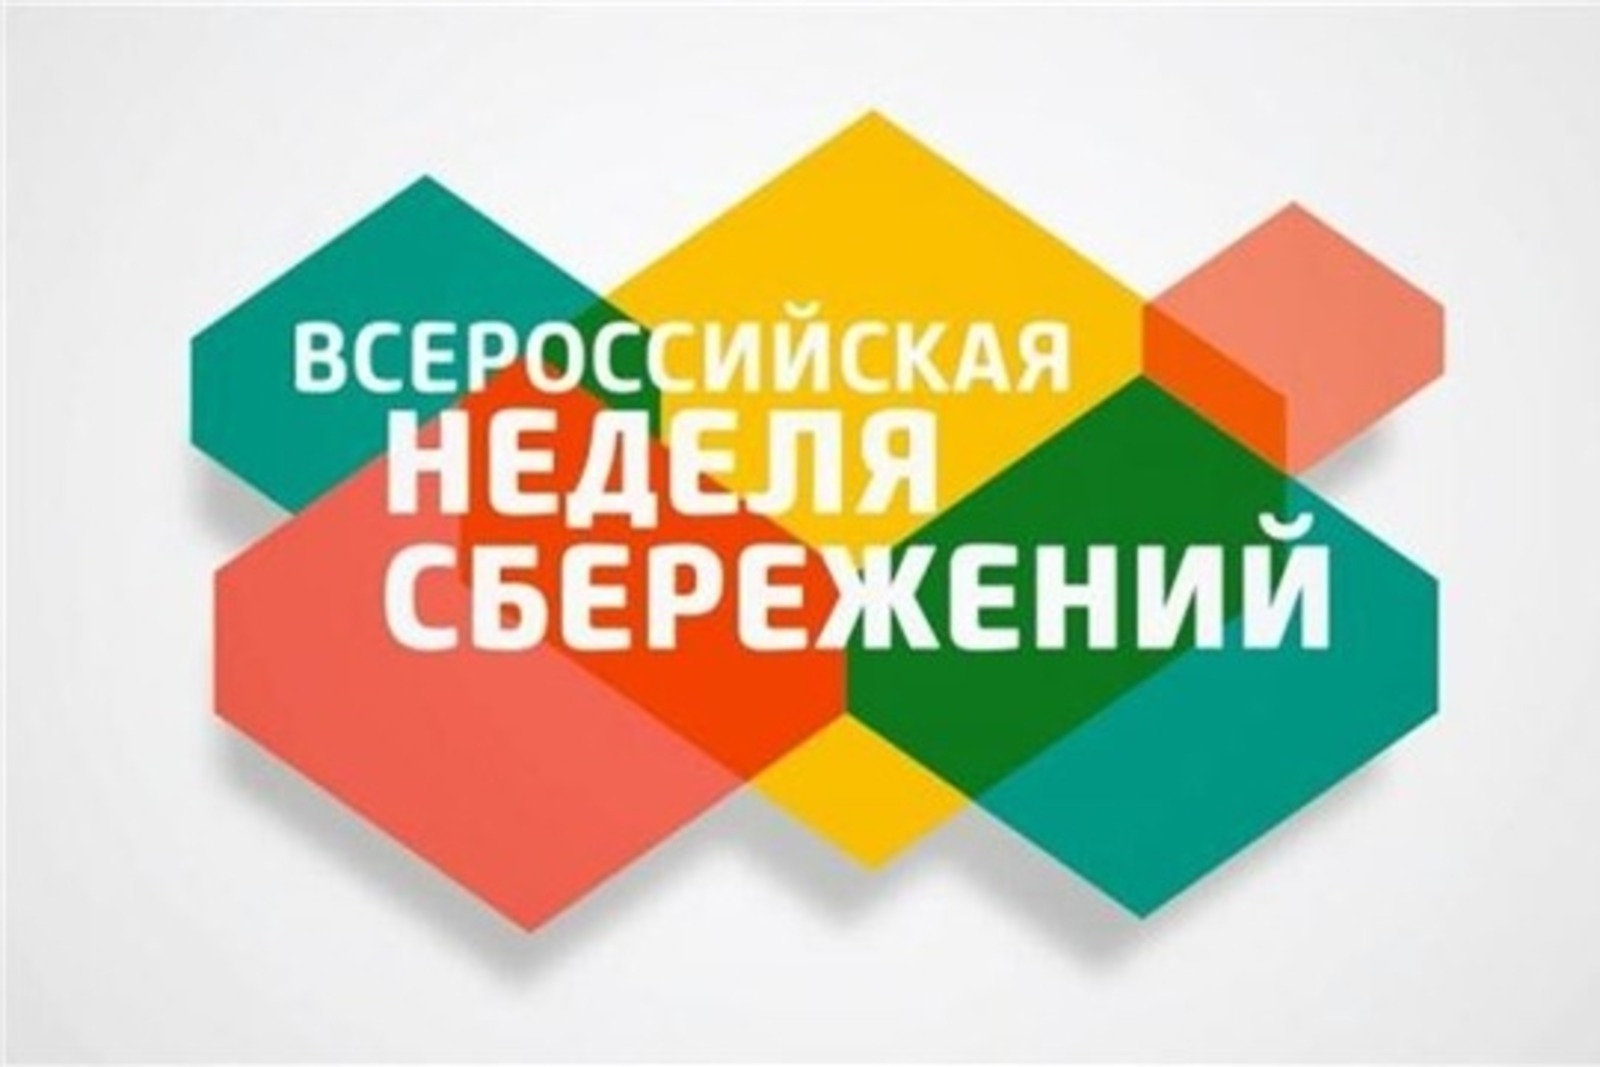 В Башкирии проходит Всероссийская неделя сбережений